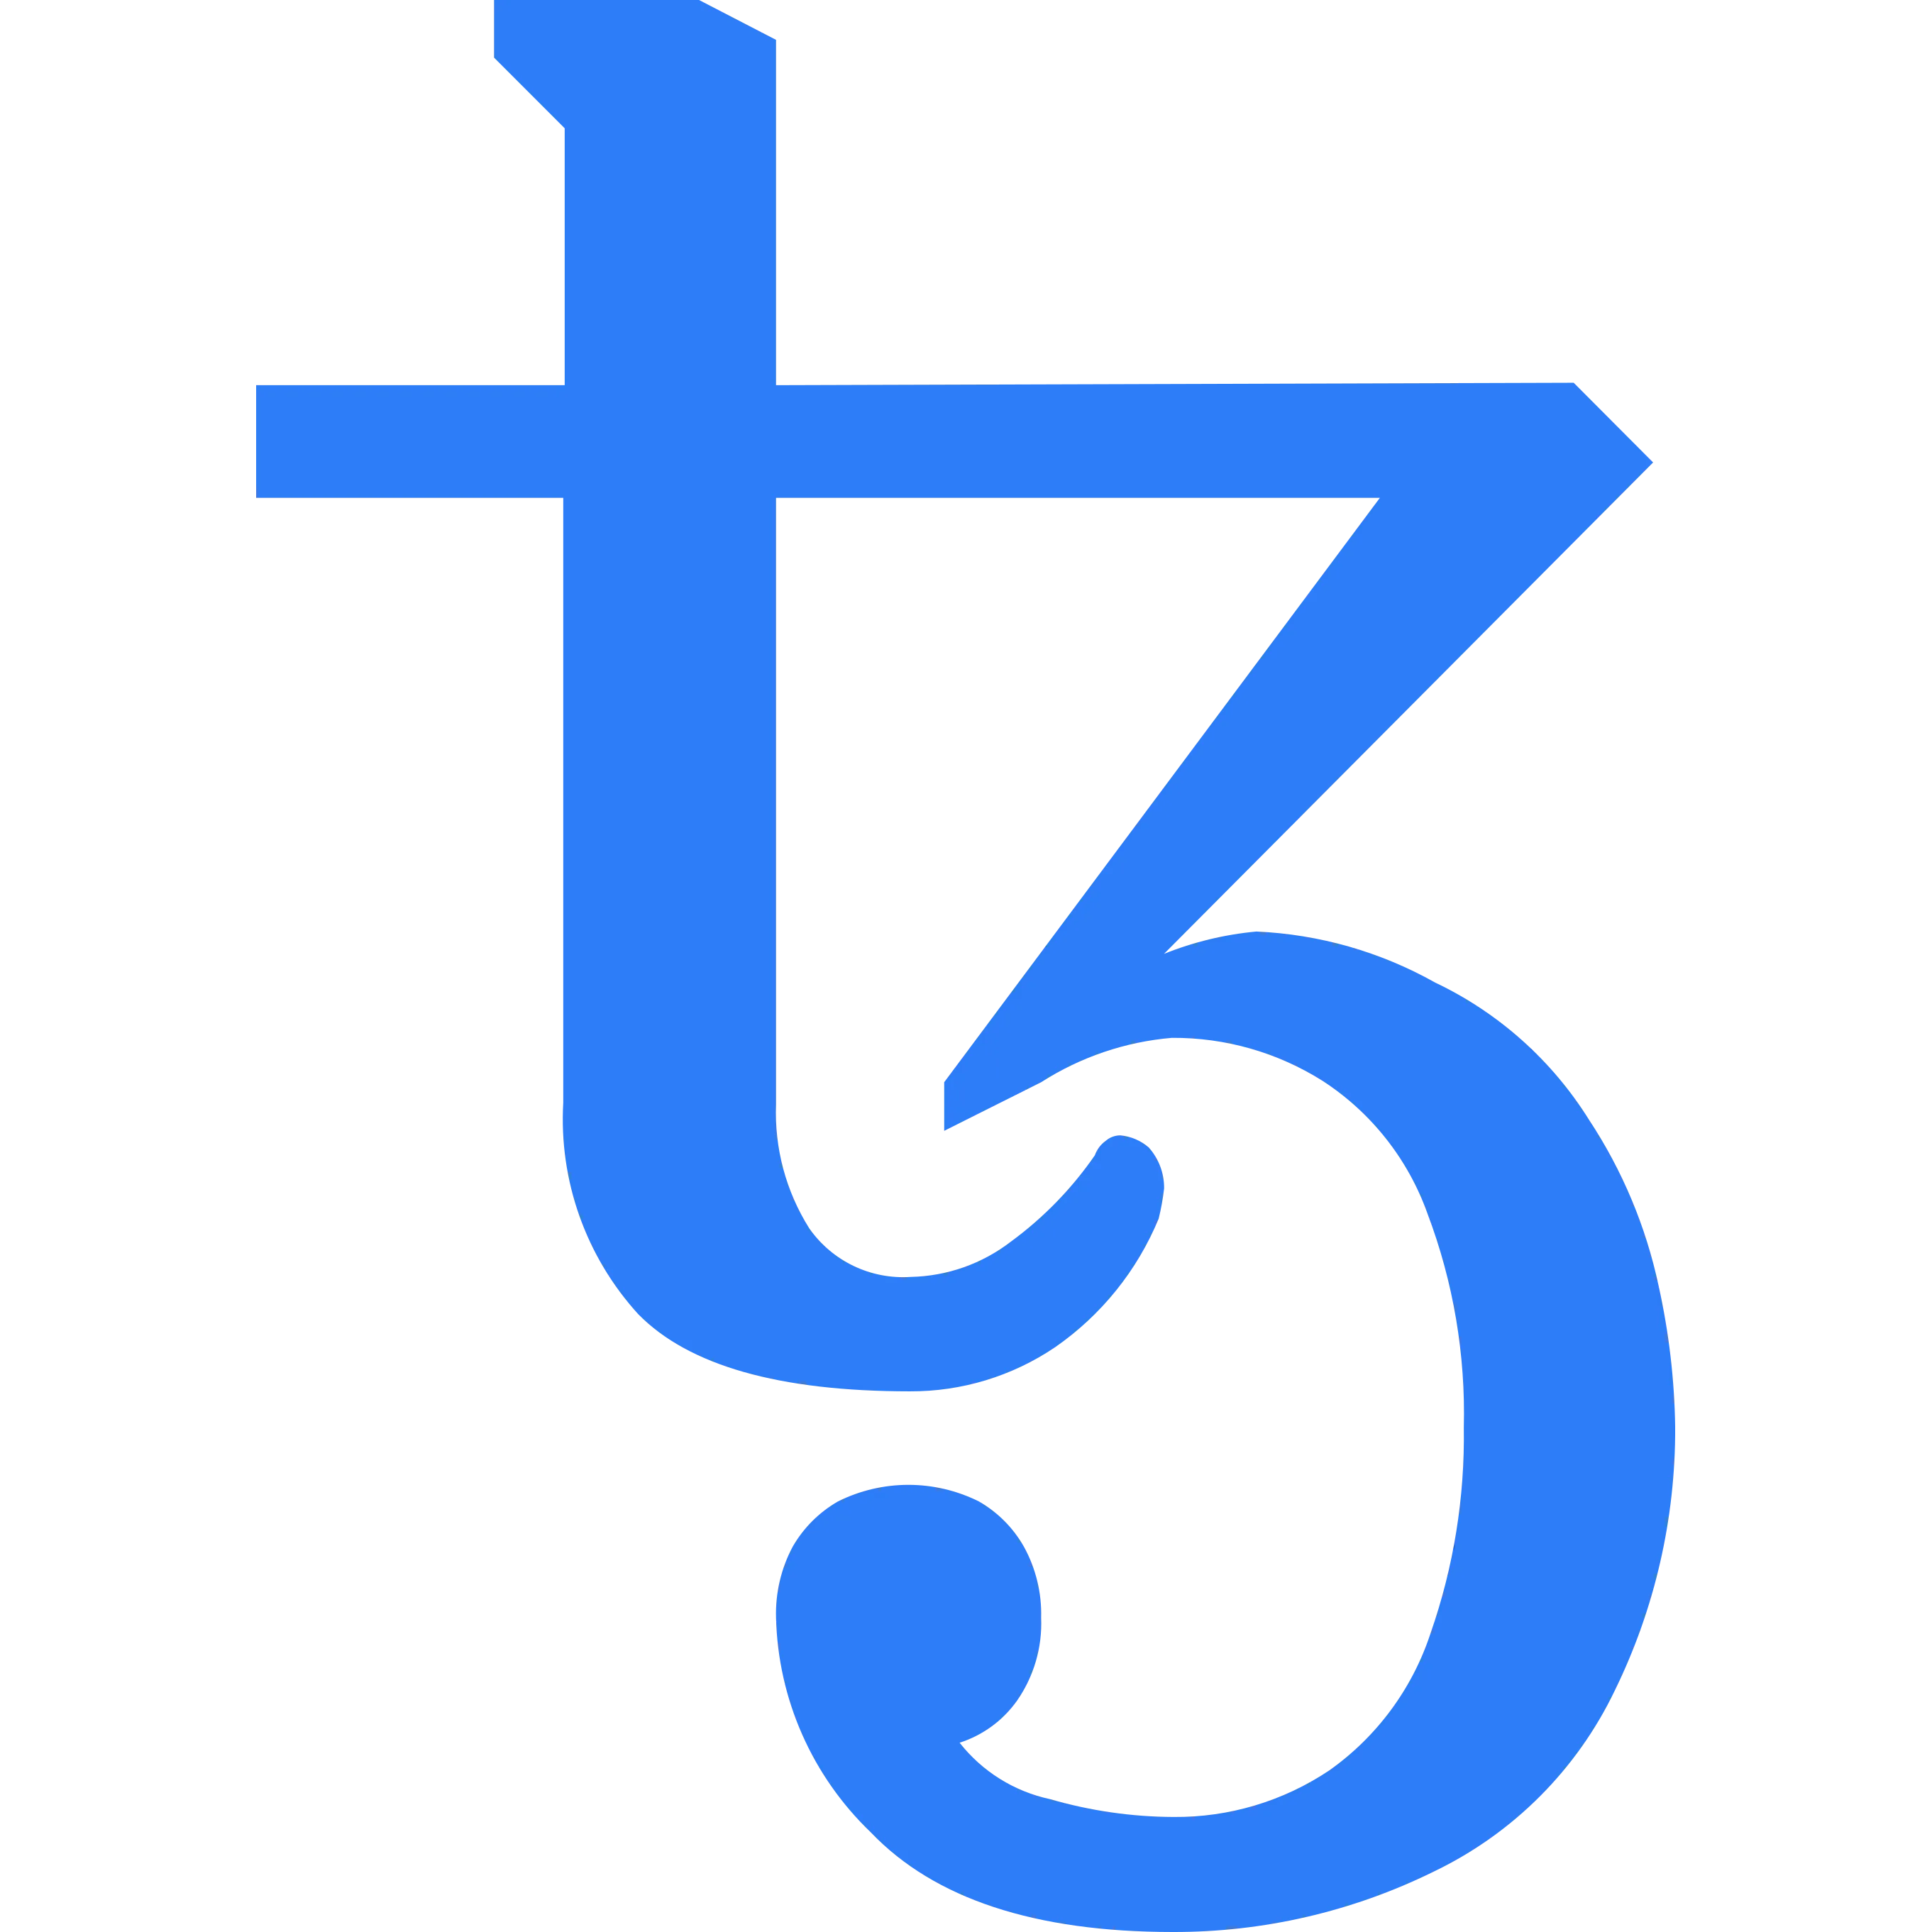 Tezos (XTZ) logo